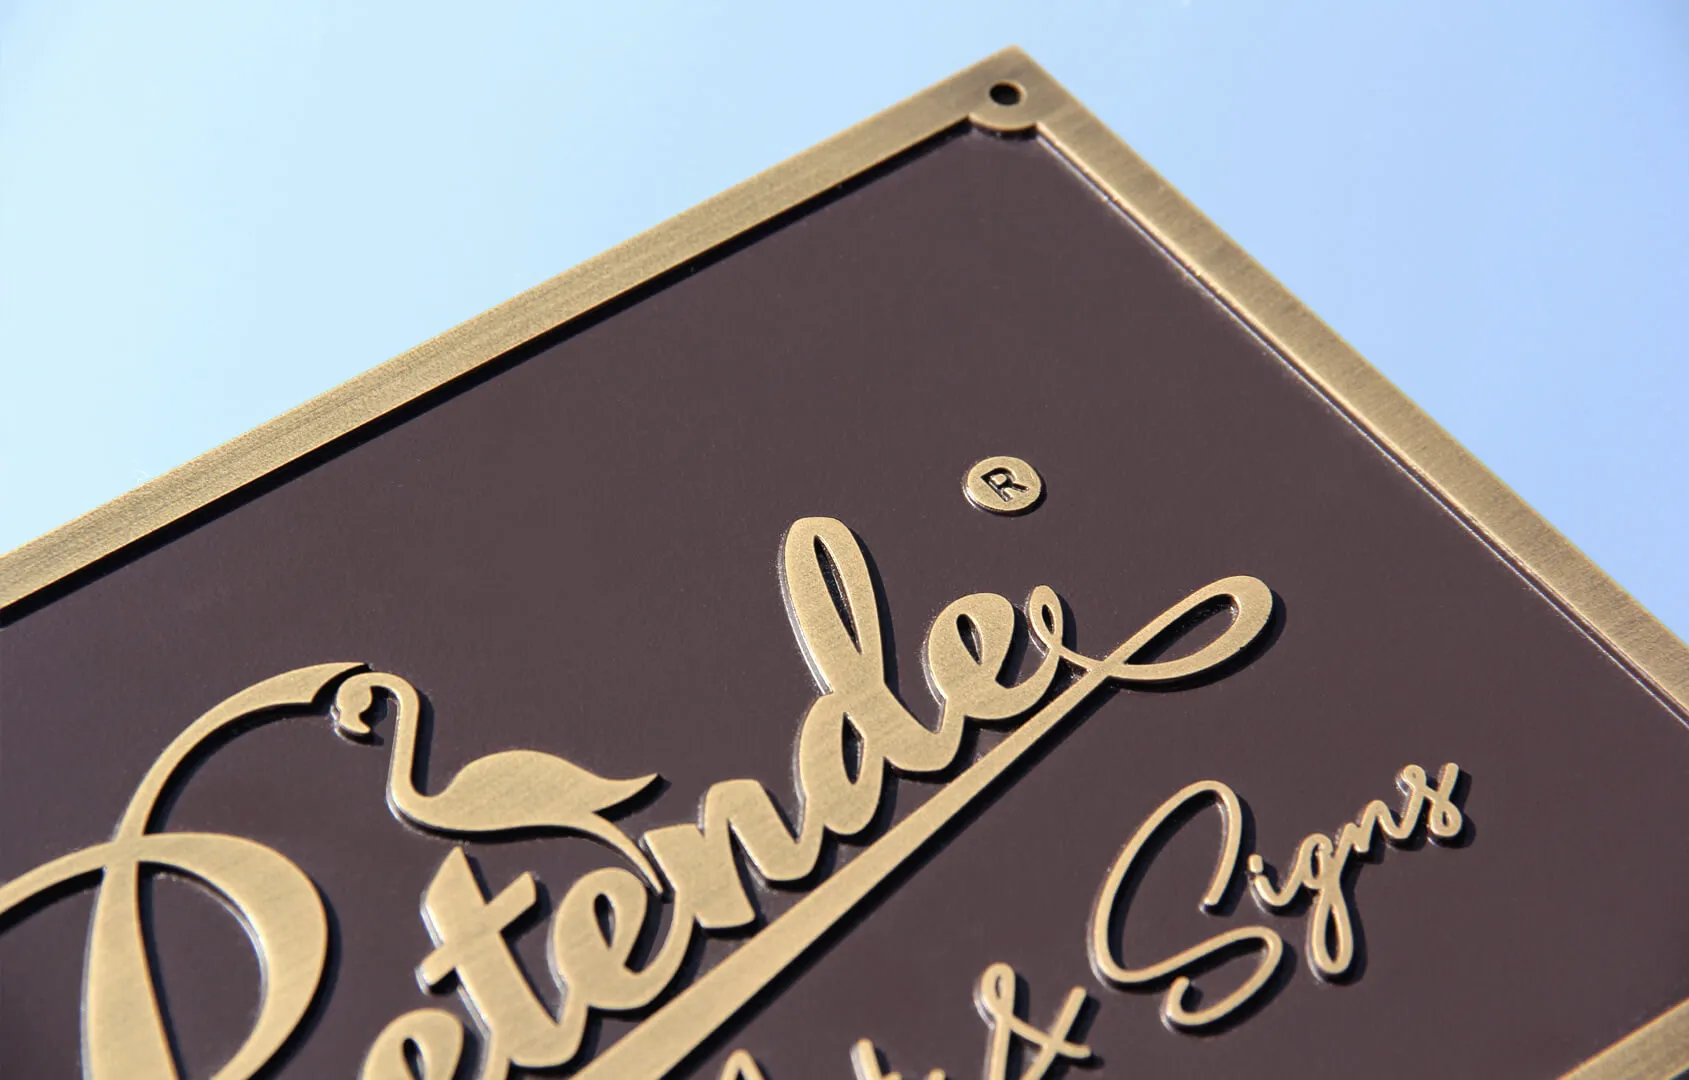 Placa de bronce fundido en 3D con el logotipo de Pretende